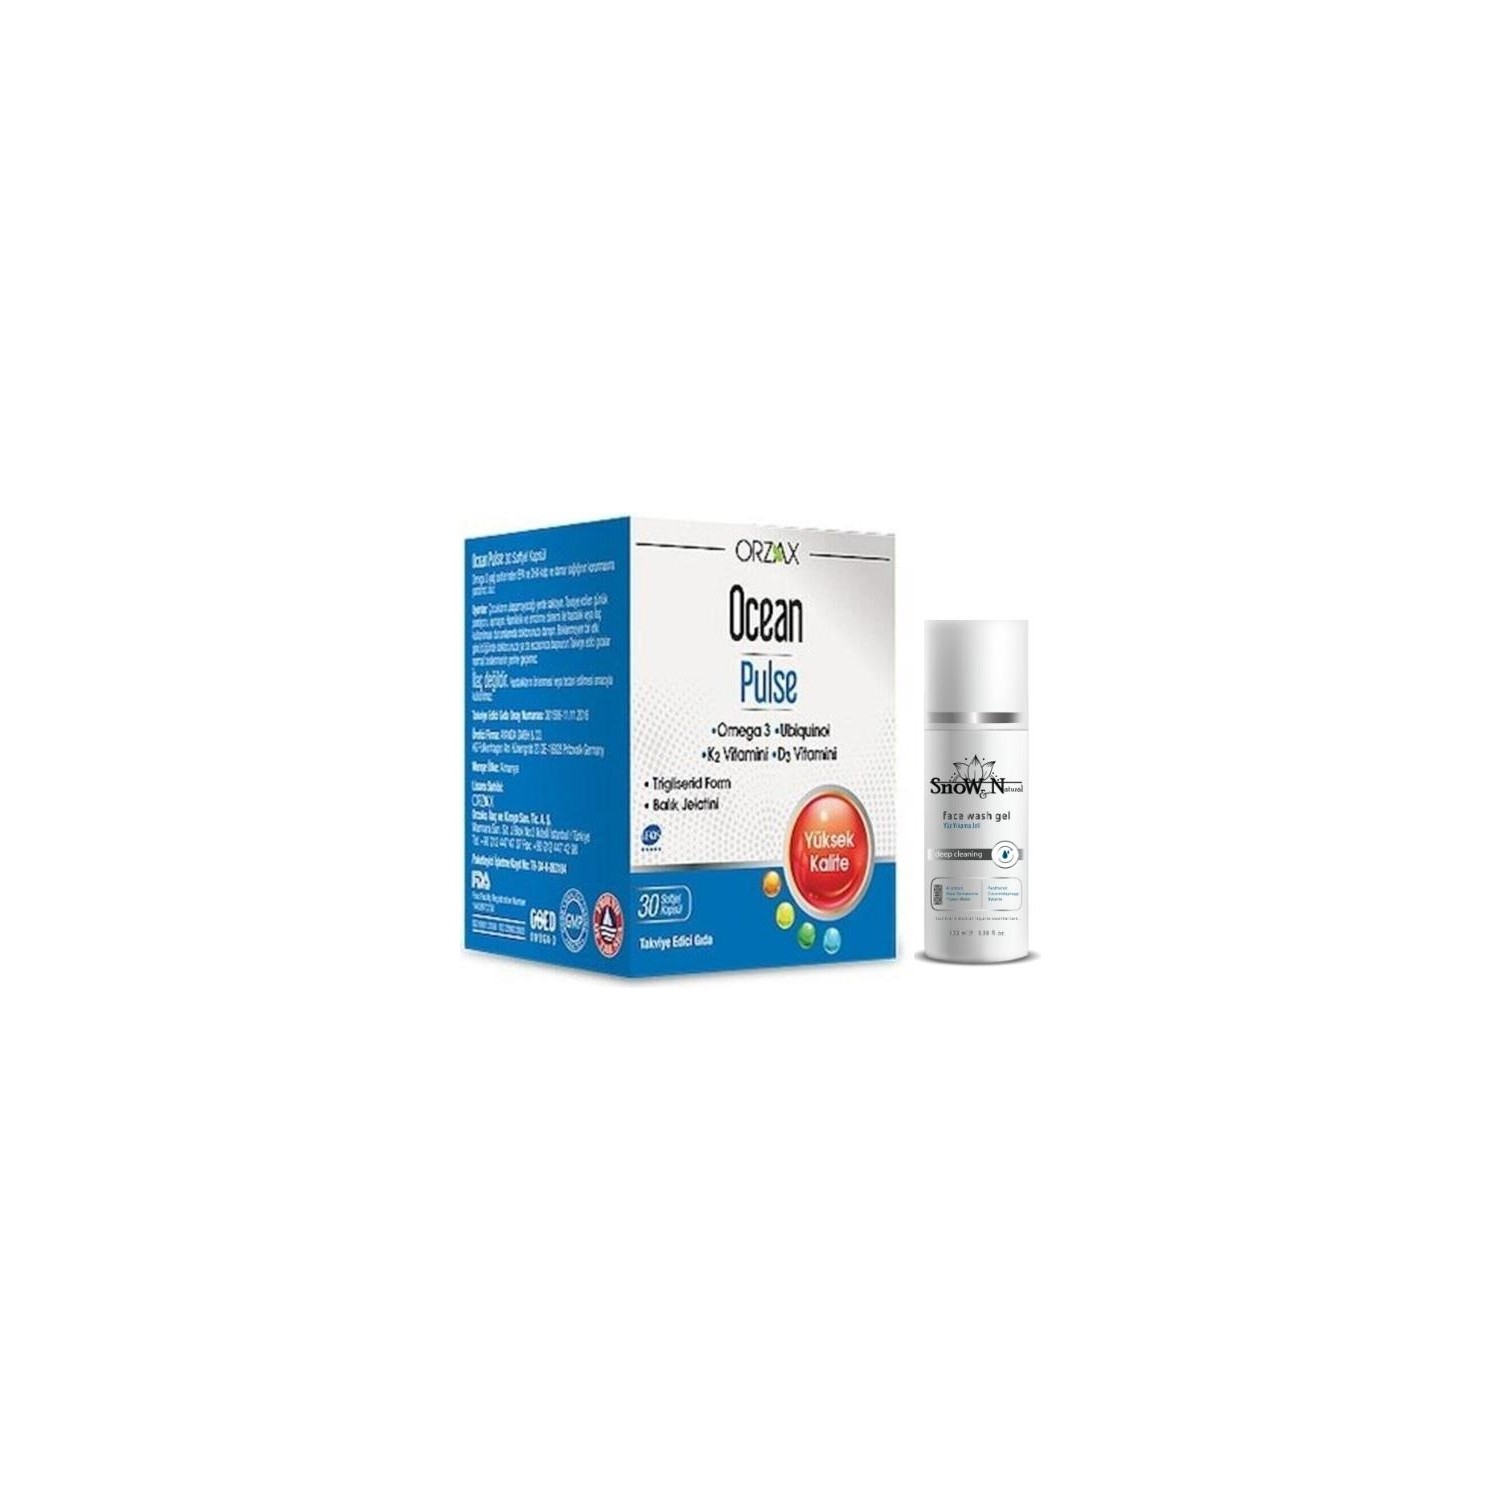 Омега-3 Orzax Pulse, 30 капсул + Очищающий гель для лица, 100 мл solgar омега 3 эпк и дгк двойной концентрации 700 мг 60 капсул